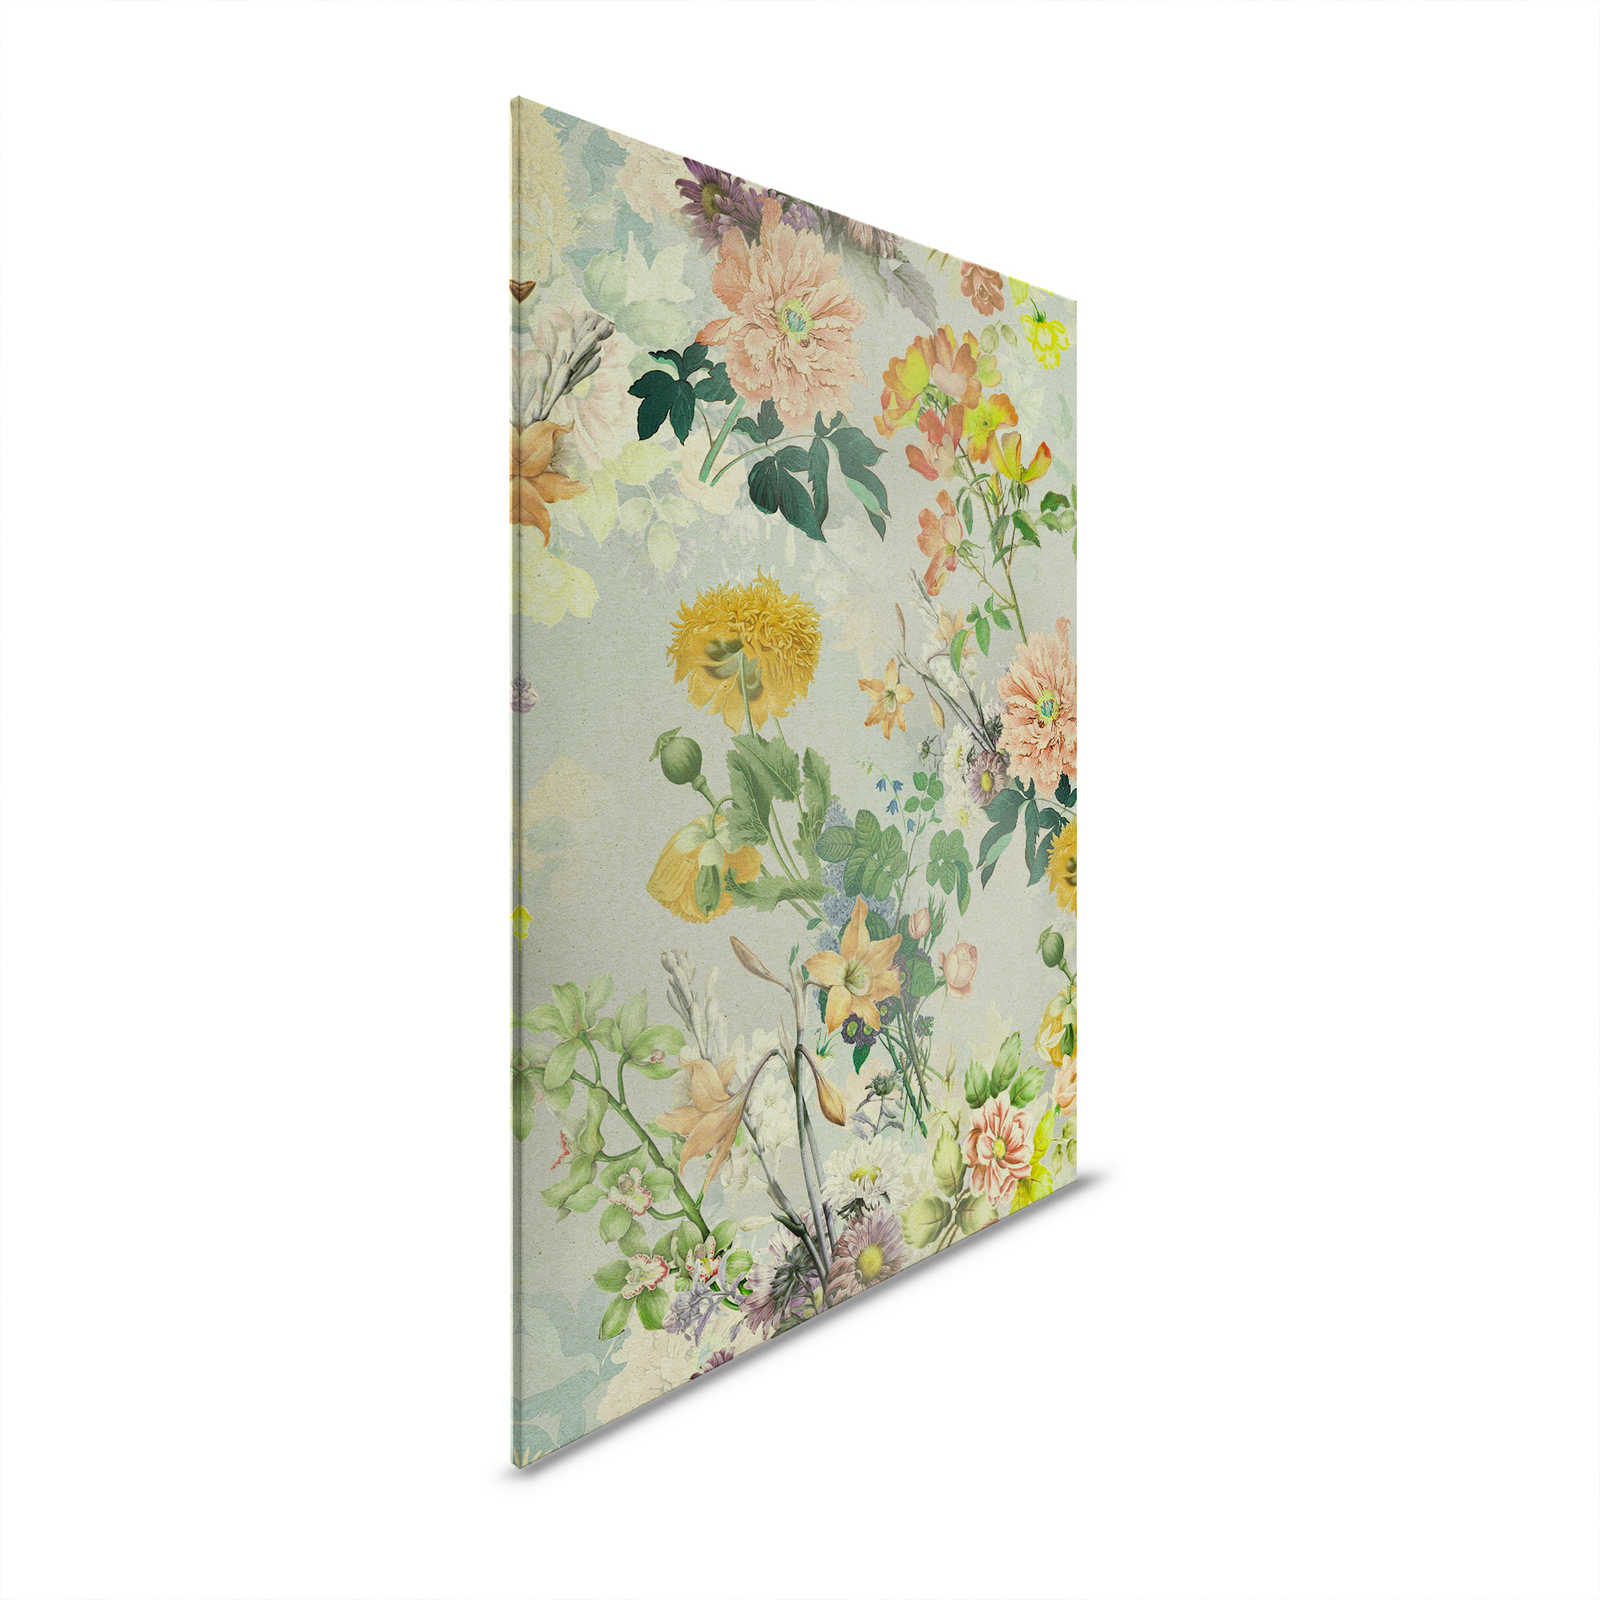 Amelies Home 2 - Bloemrijk Canvas schilderij kleurrijke bloesems in landelijke stijl - 1,20 m x 0,80 m
